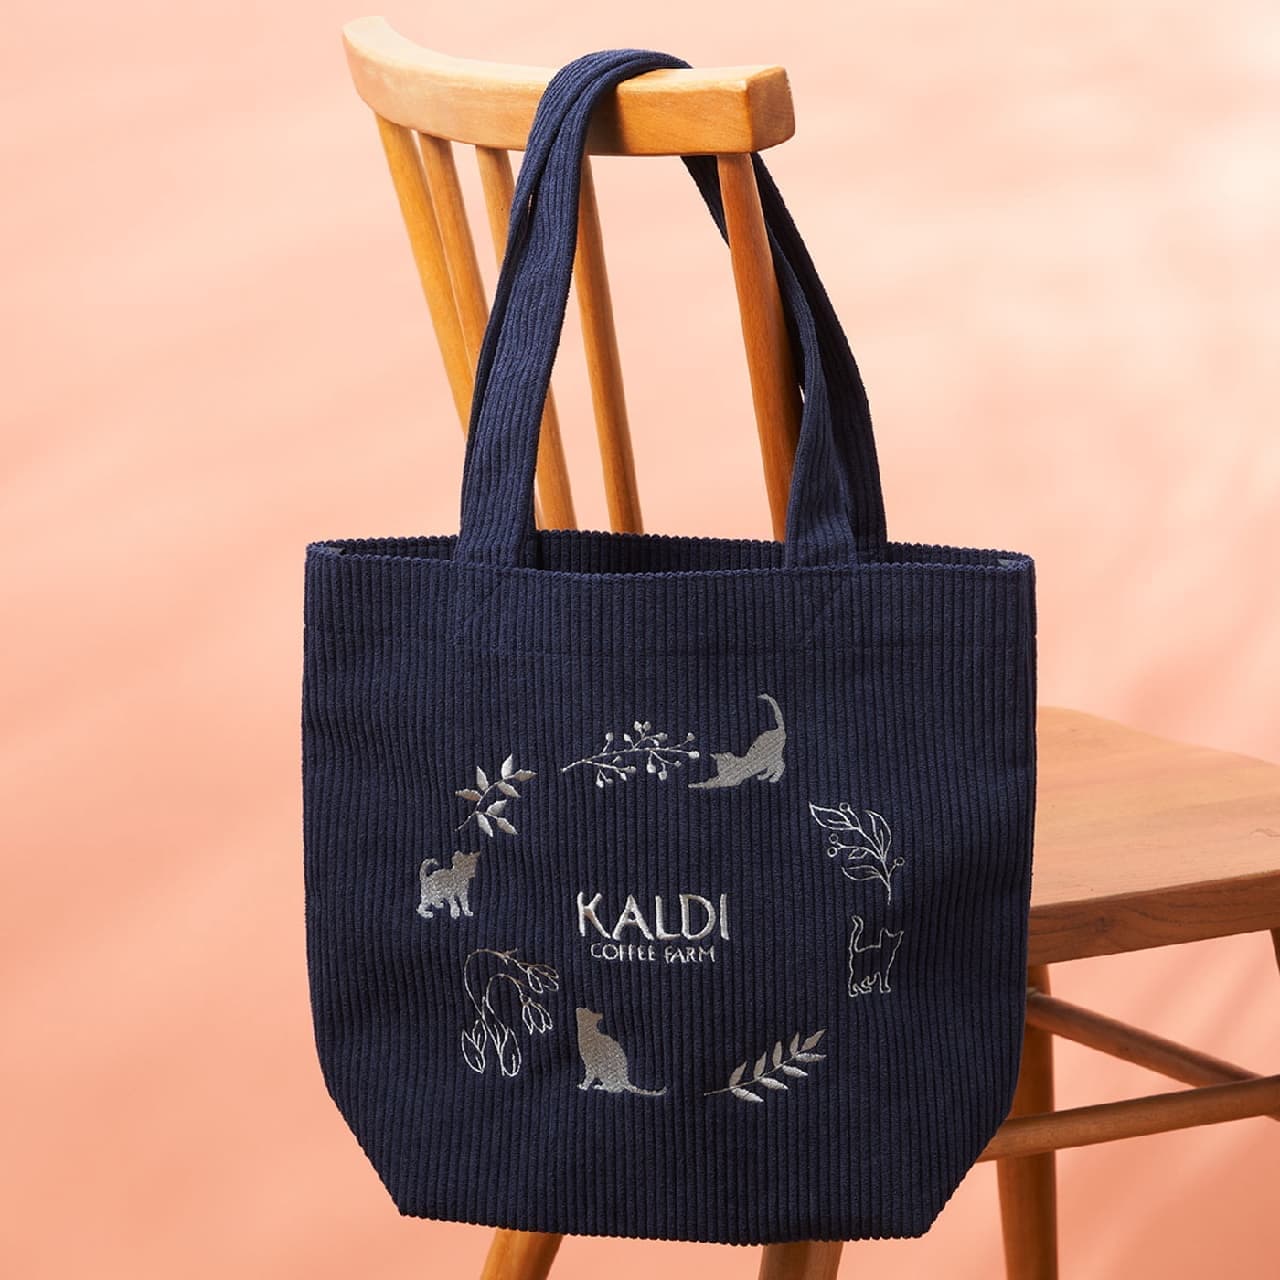 KALDI "Cat's Day Bag Premium